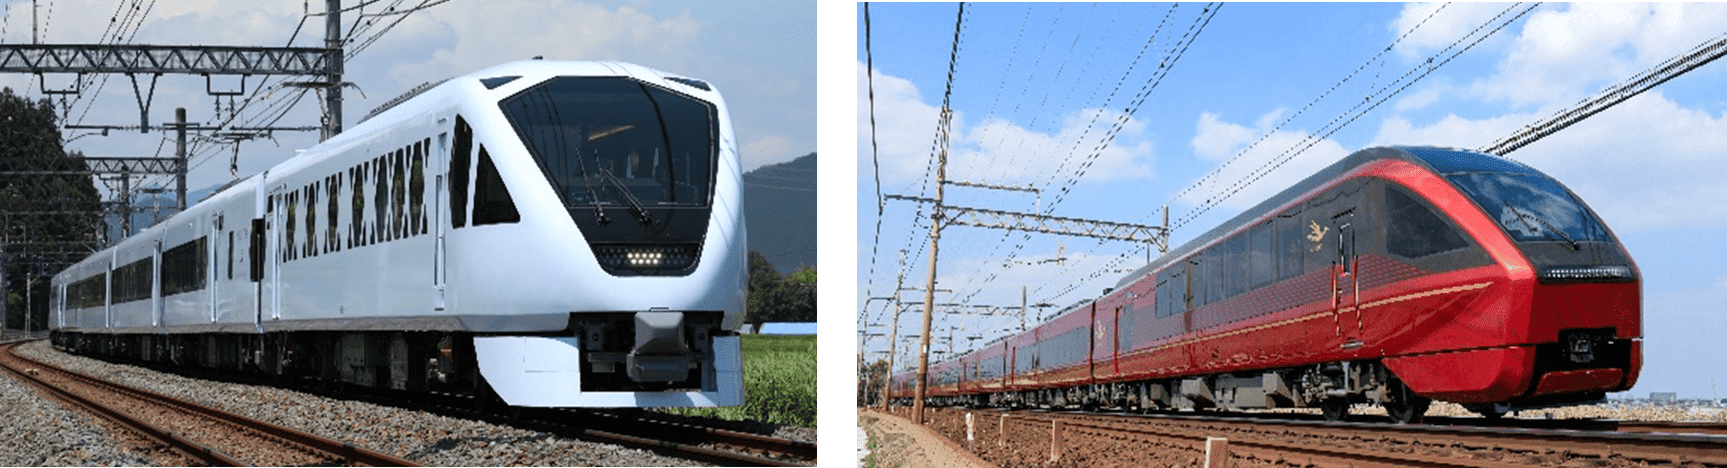 「リアル桃鉄」が4月19日から開催。実際に電車に乗って参加_006